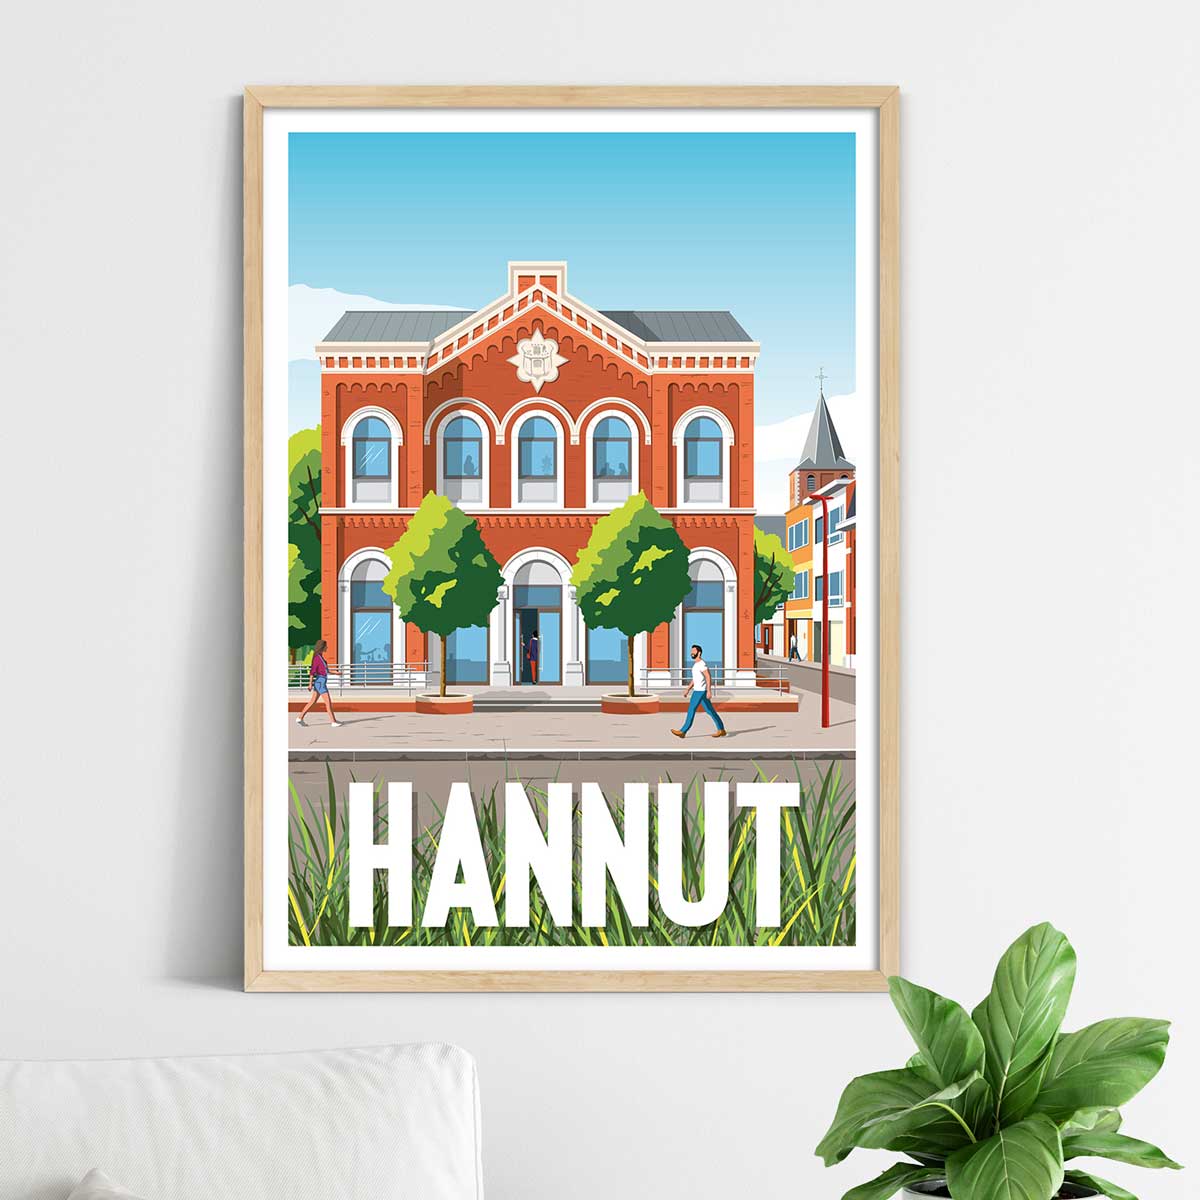 Affiche Hannut